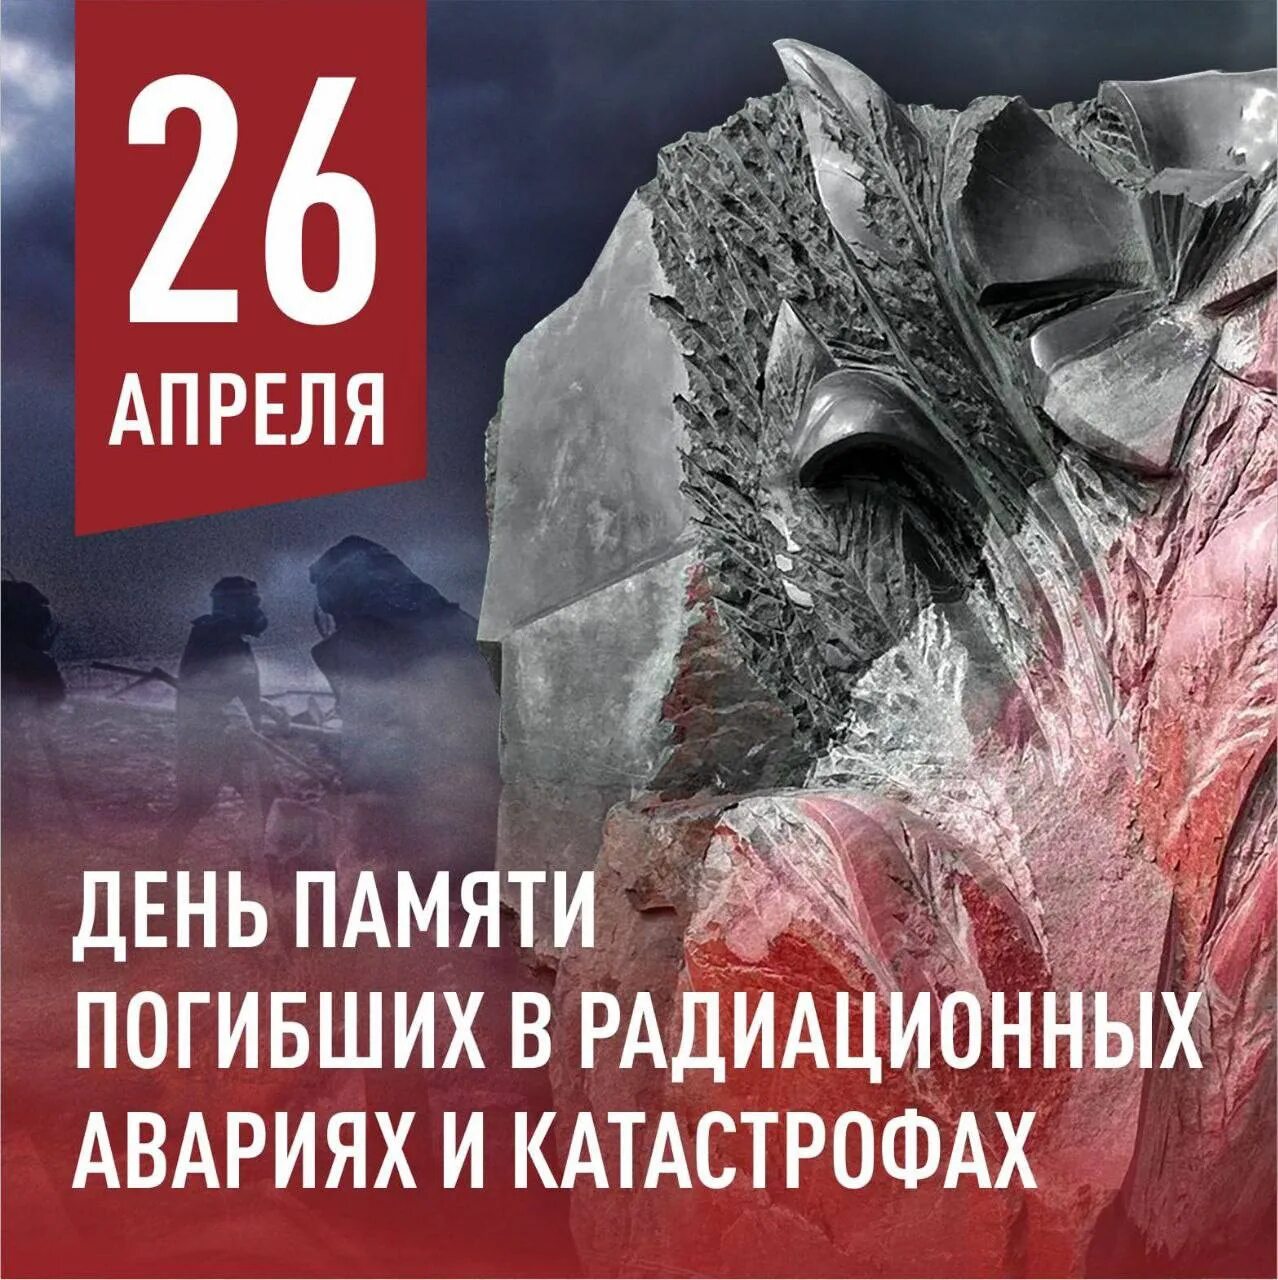 26 апреля день чернобыля. 26 Апреля день памяти погибших в радиационных авариях и катастрофах. 26 Апреля день памяти. День памяти погибших в радиационных катастрофах. Чернобыль день памяти.